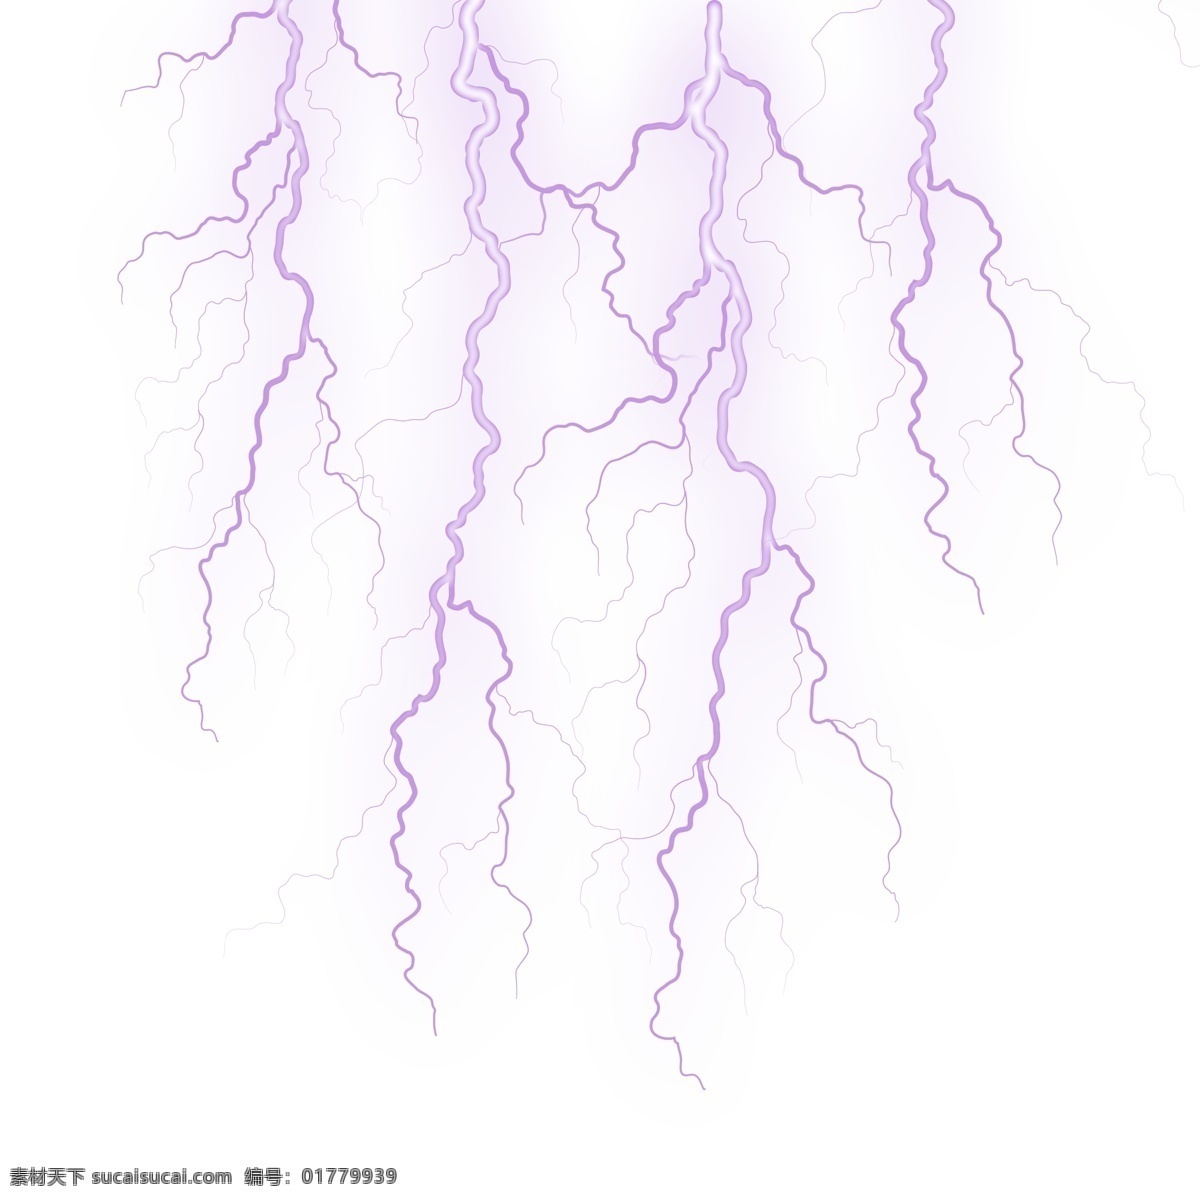 紫色 竖 型 闪电 效果 紫色竖型闪电 枝杈闪电 闪电光源 闪电png 闪电psd 闪电设计 闪电效果 自然现象 闪电频率